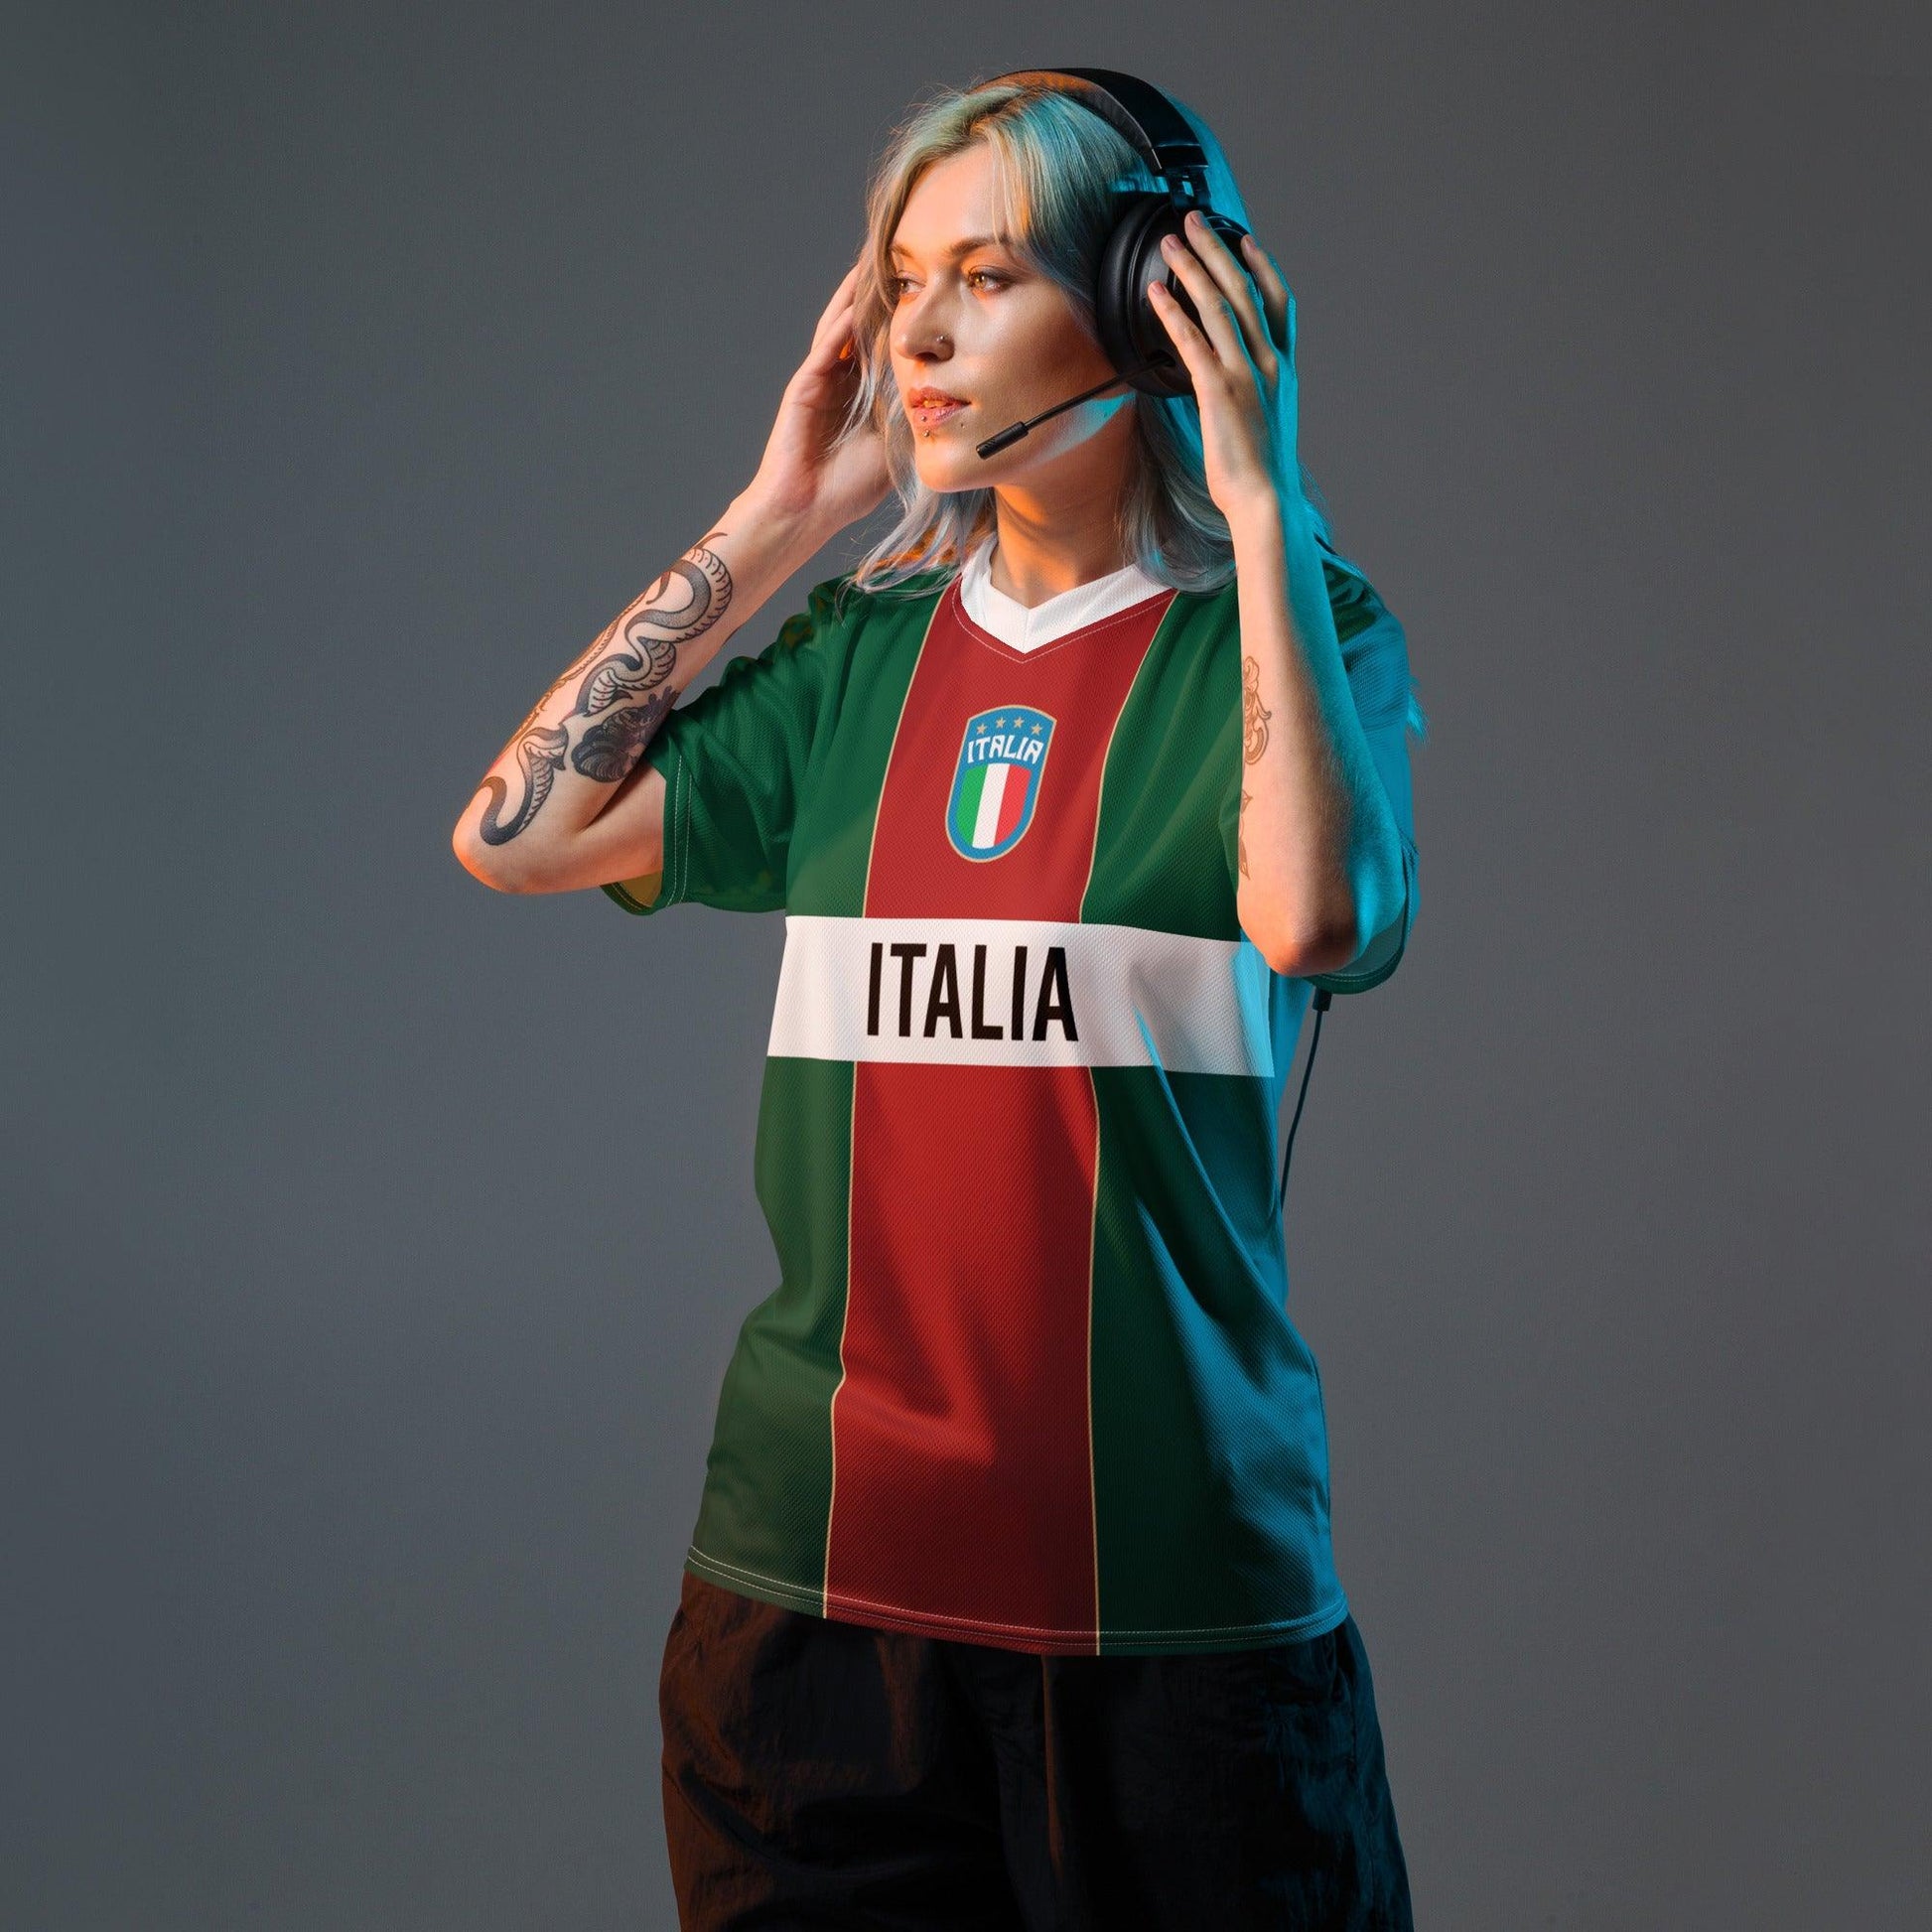 Stijlvol Italiaans voetbalshirt voor mannen en vrouwen